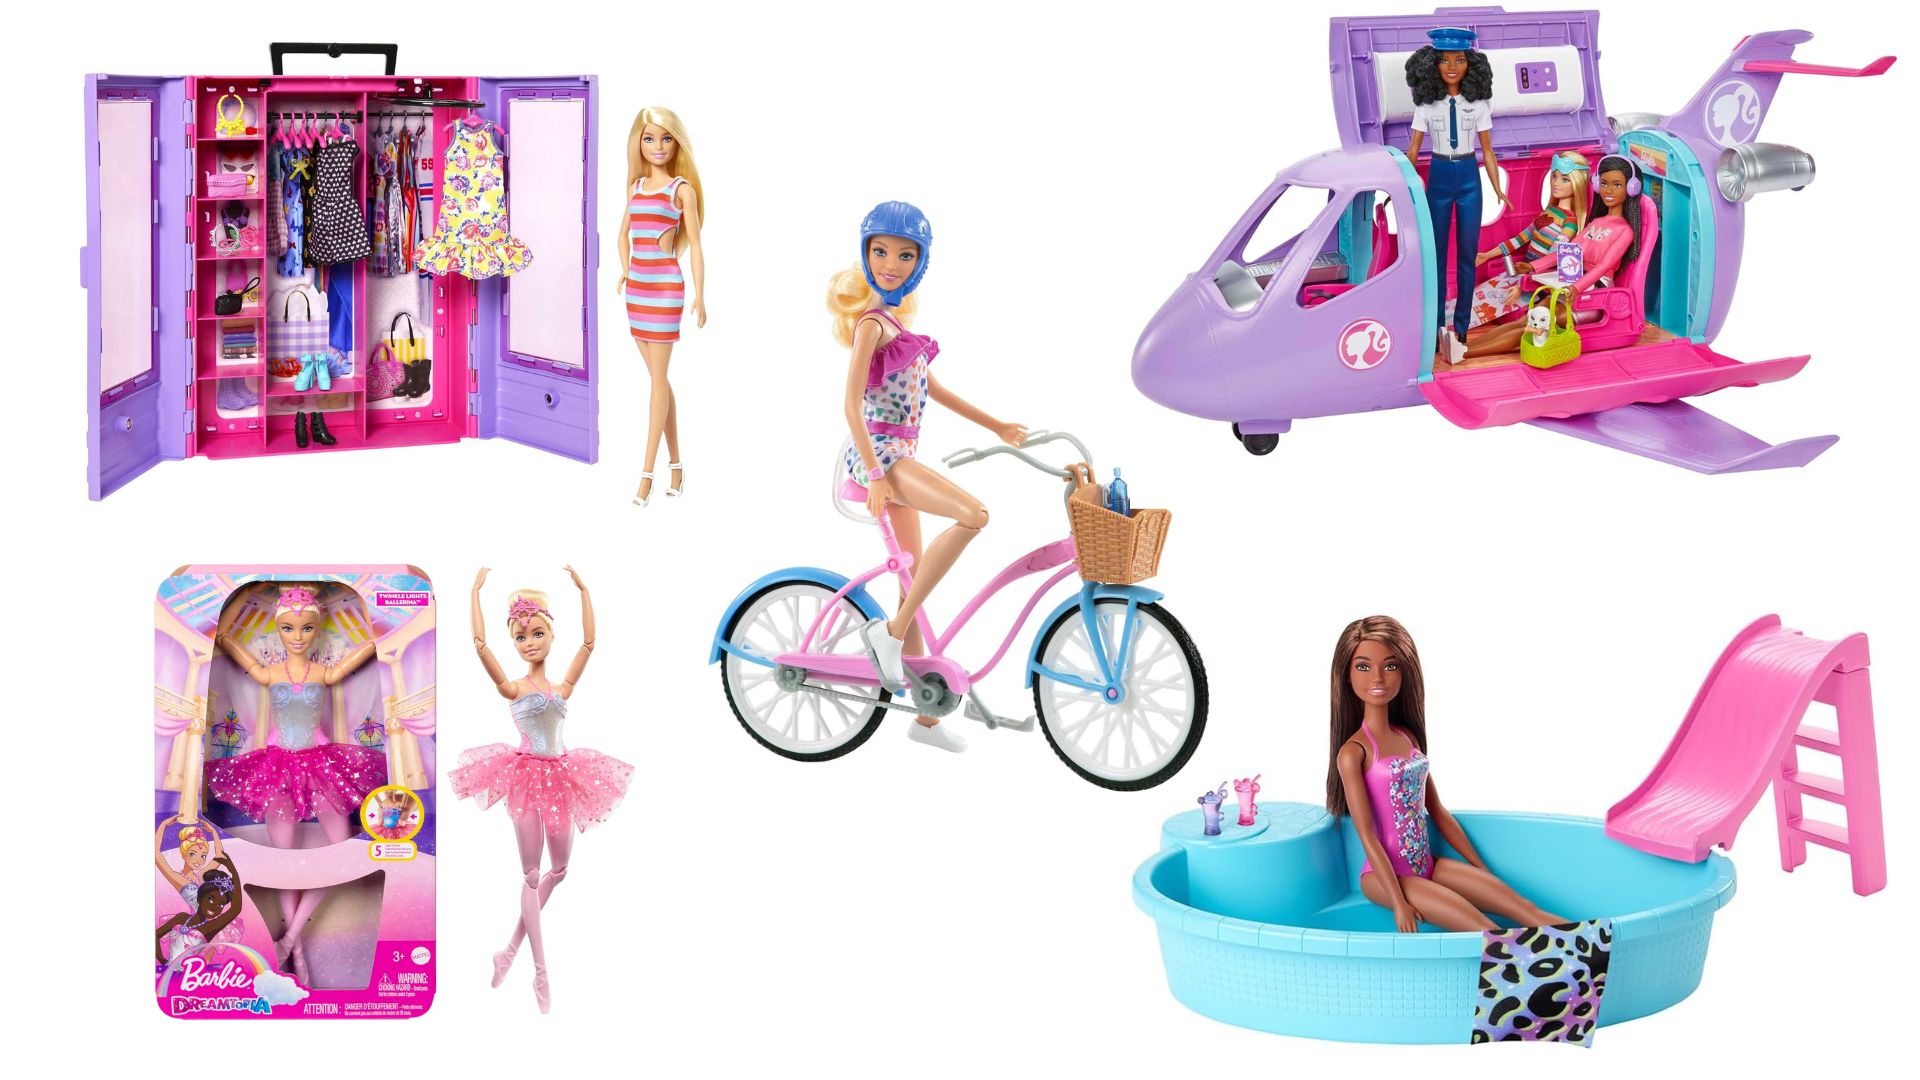 Brinquedos da Barbie com desconto na Black Friday (Fotos: Divulgação / Amazon) 